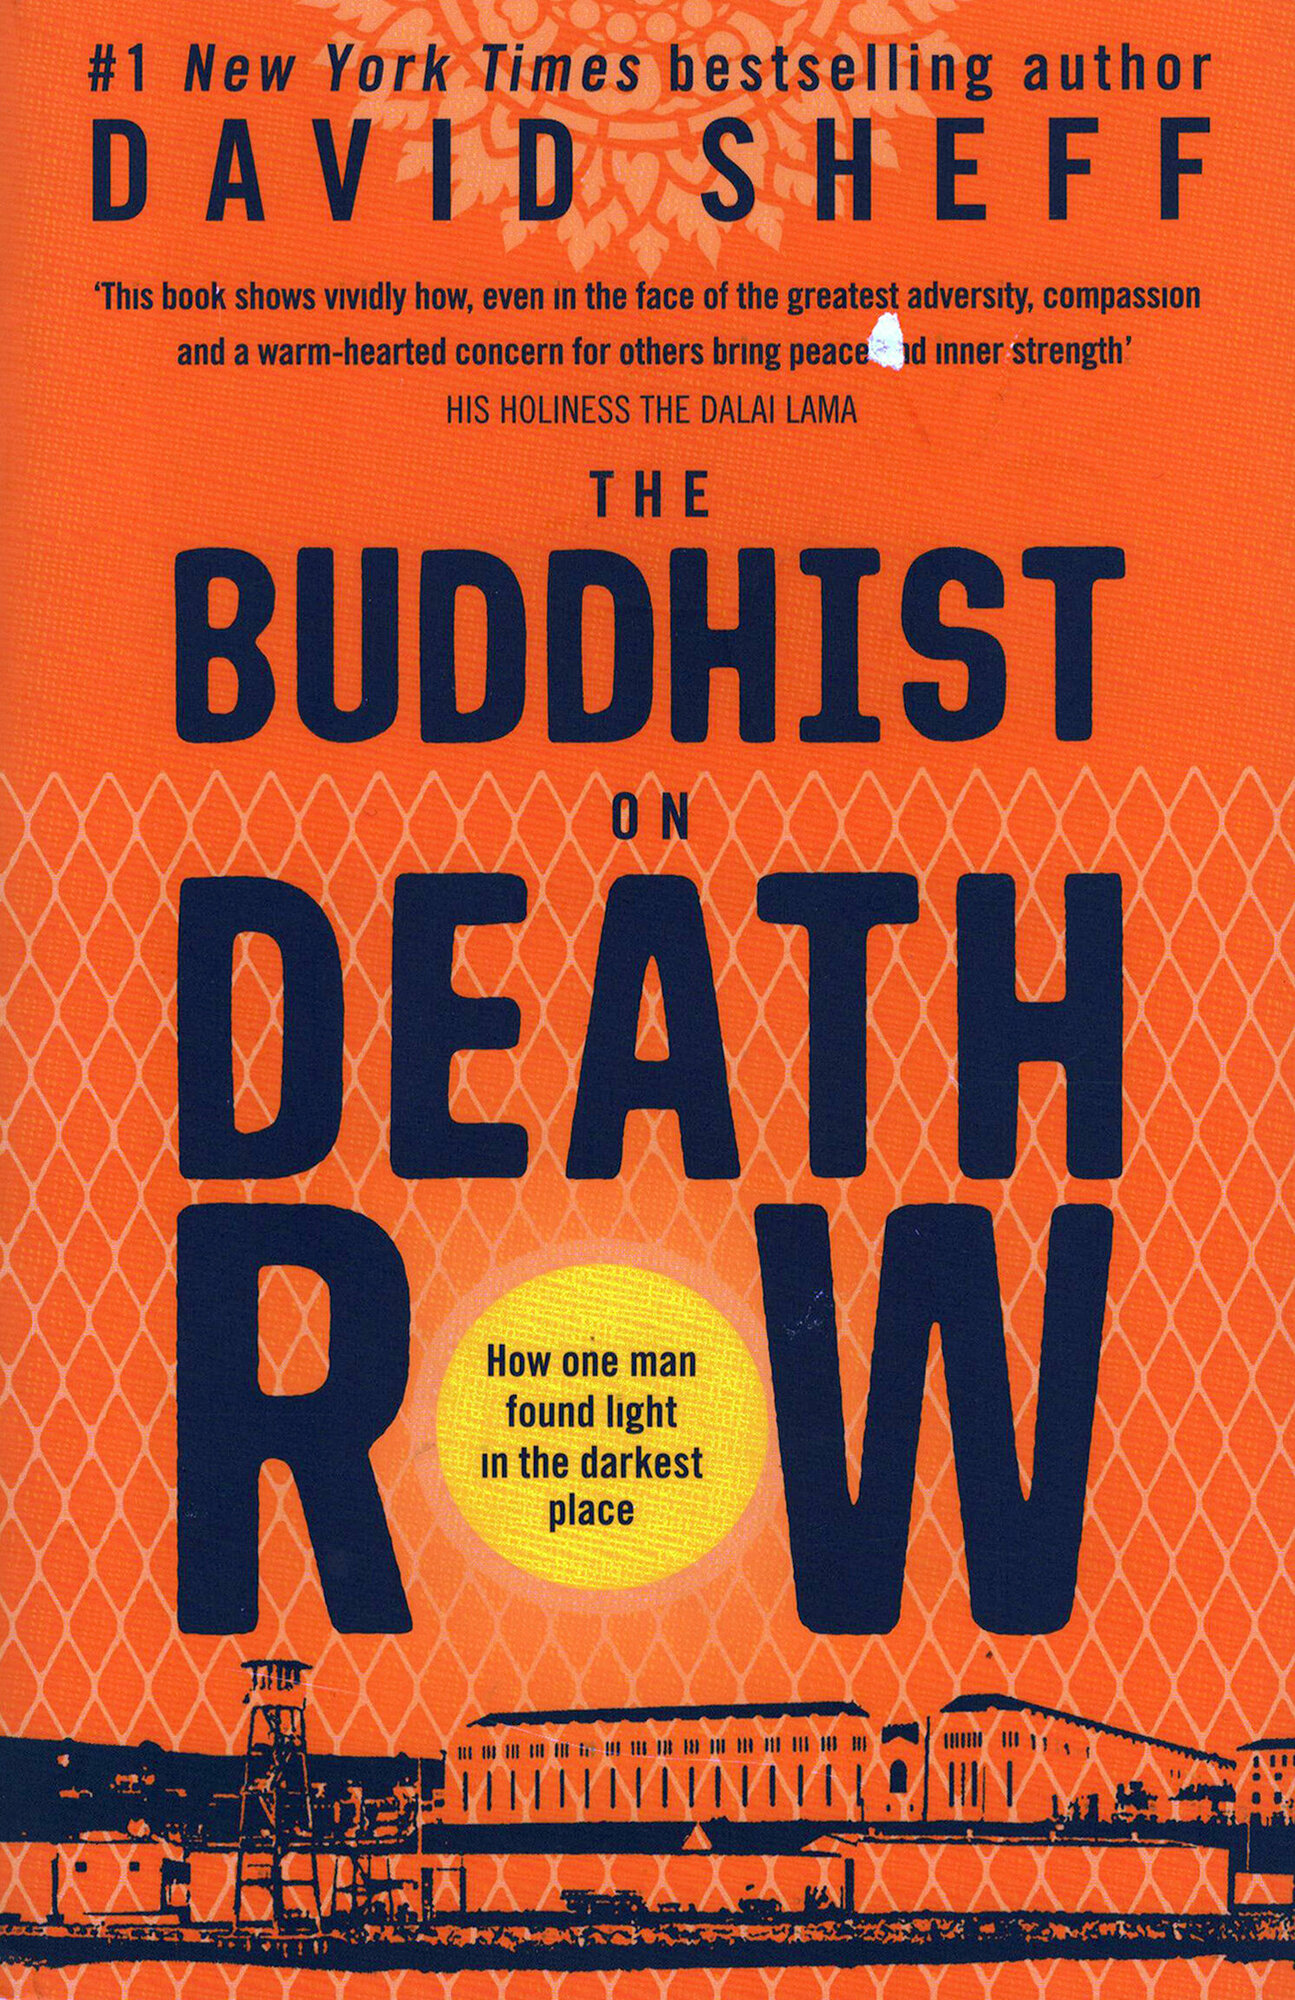 The Buddhist on Death Row (Sheff David) - фото №1